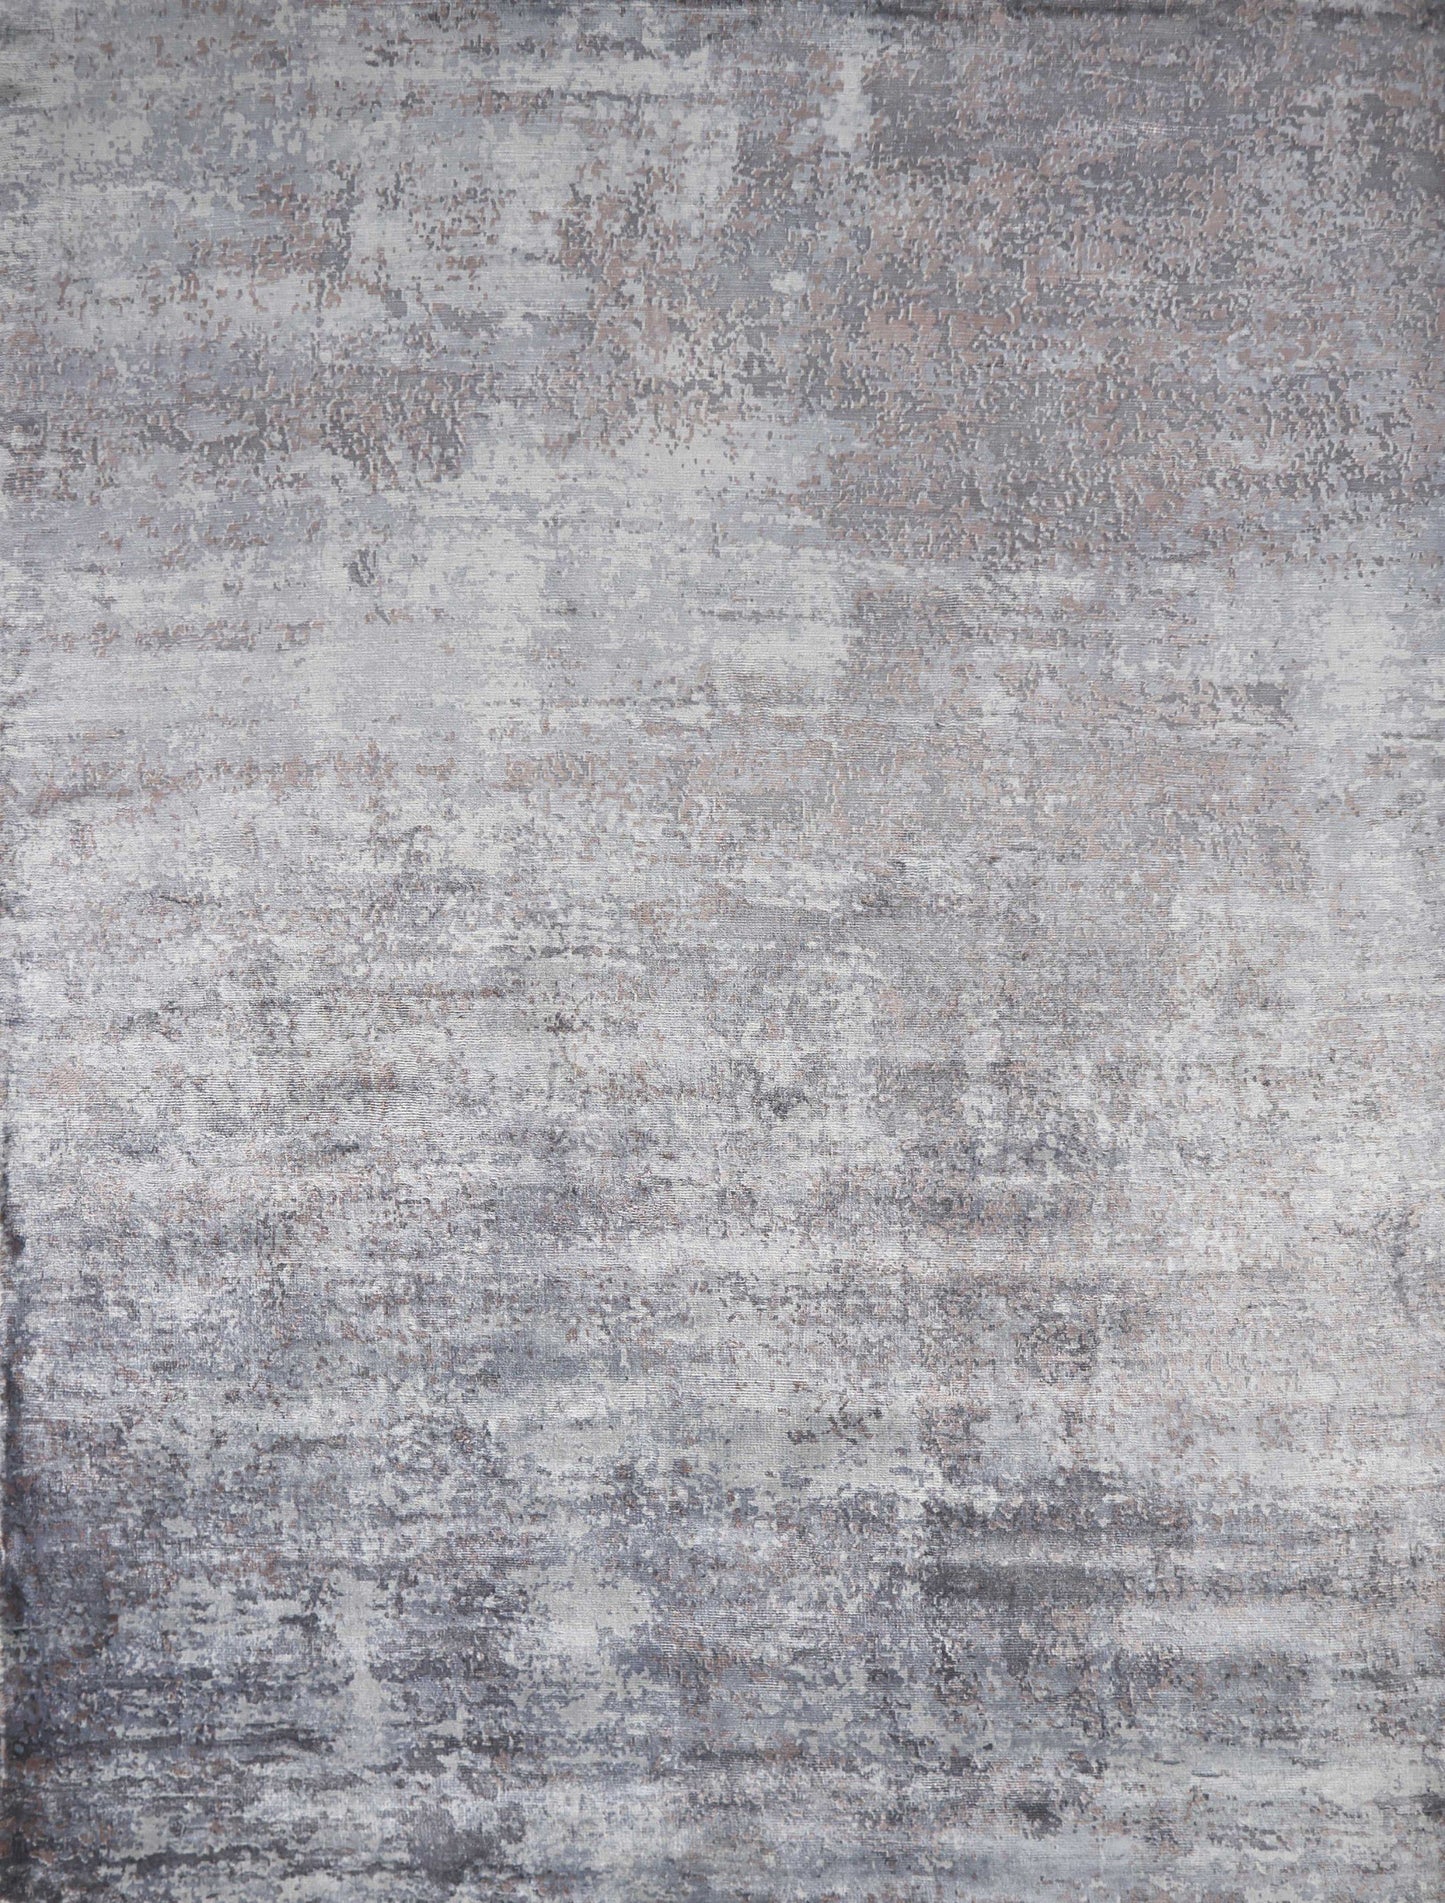 Slate Grey Hand Loomed Abstract Brushstroke Indoor Area Rug